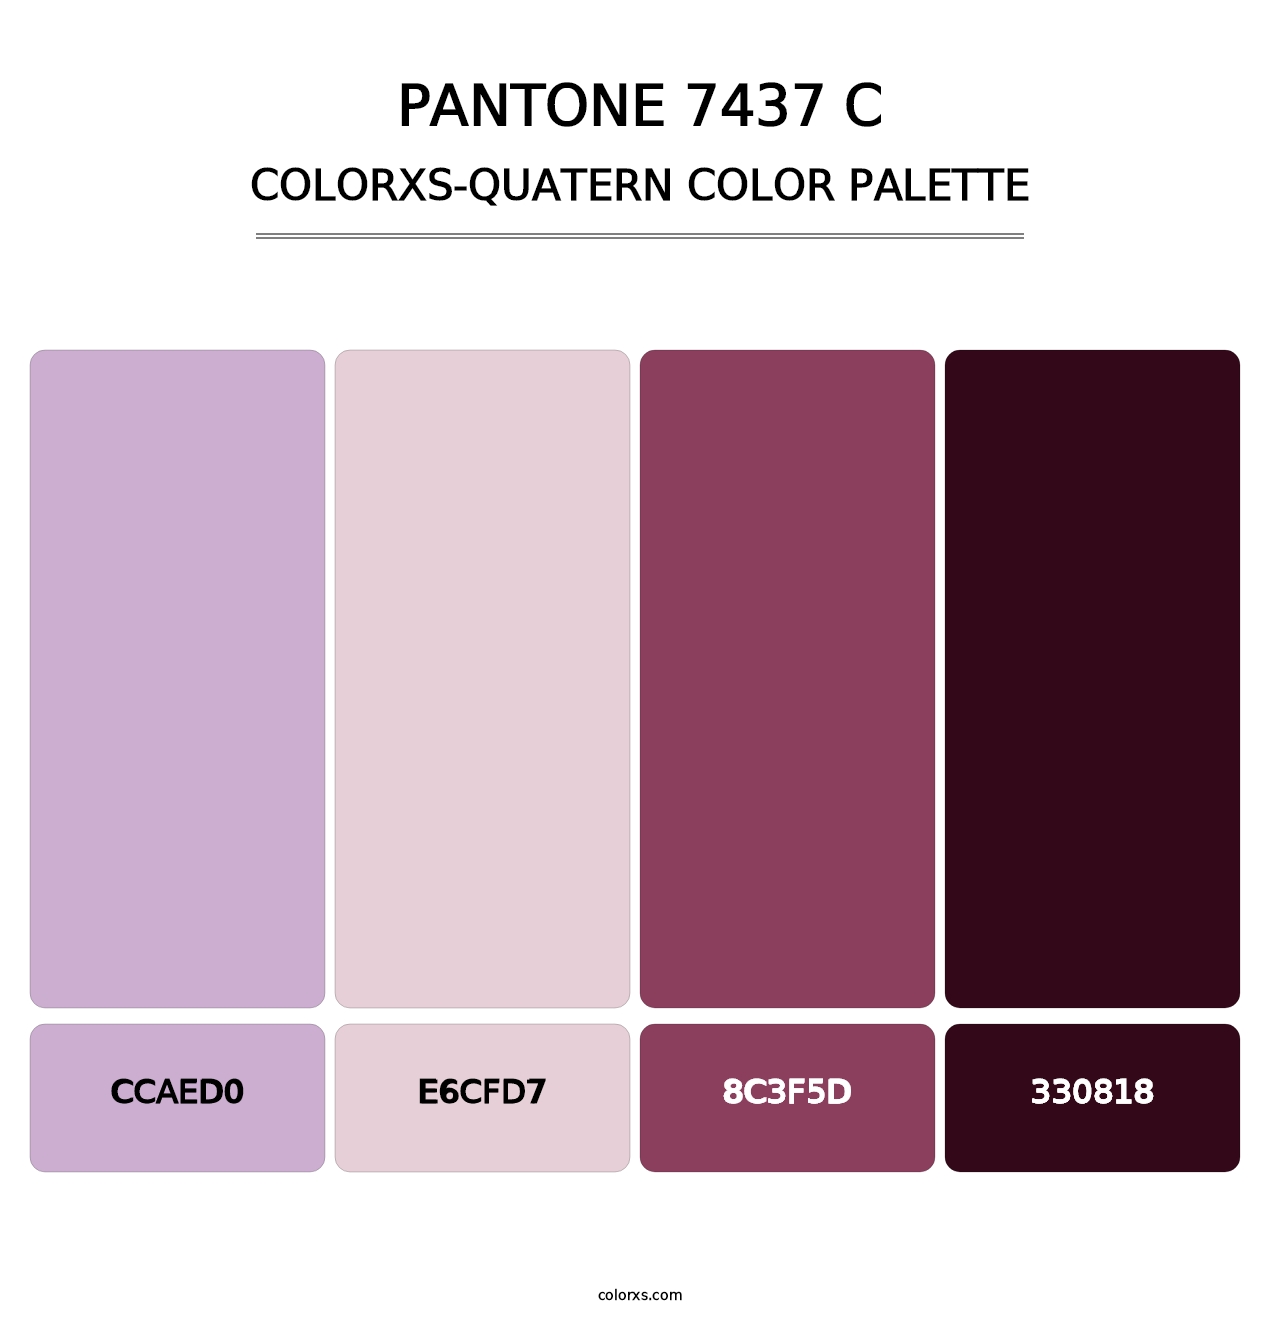 PANTONE 7437 C - Colorxs Quatern Palette